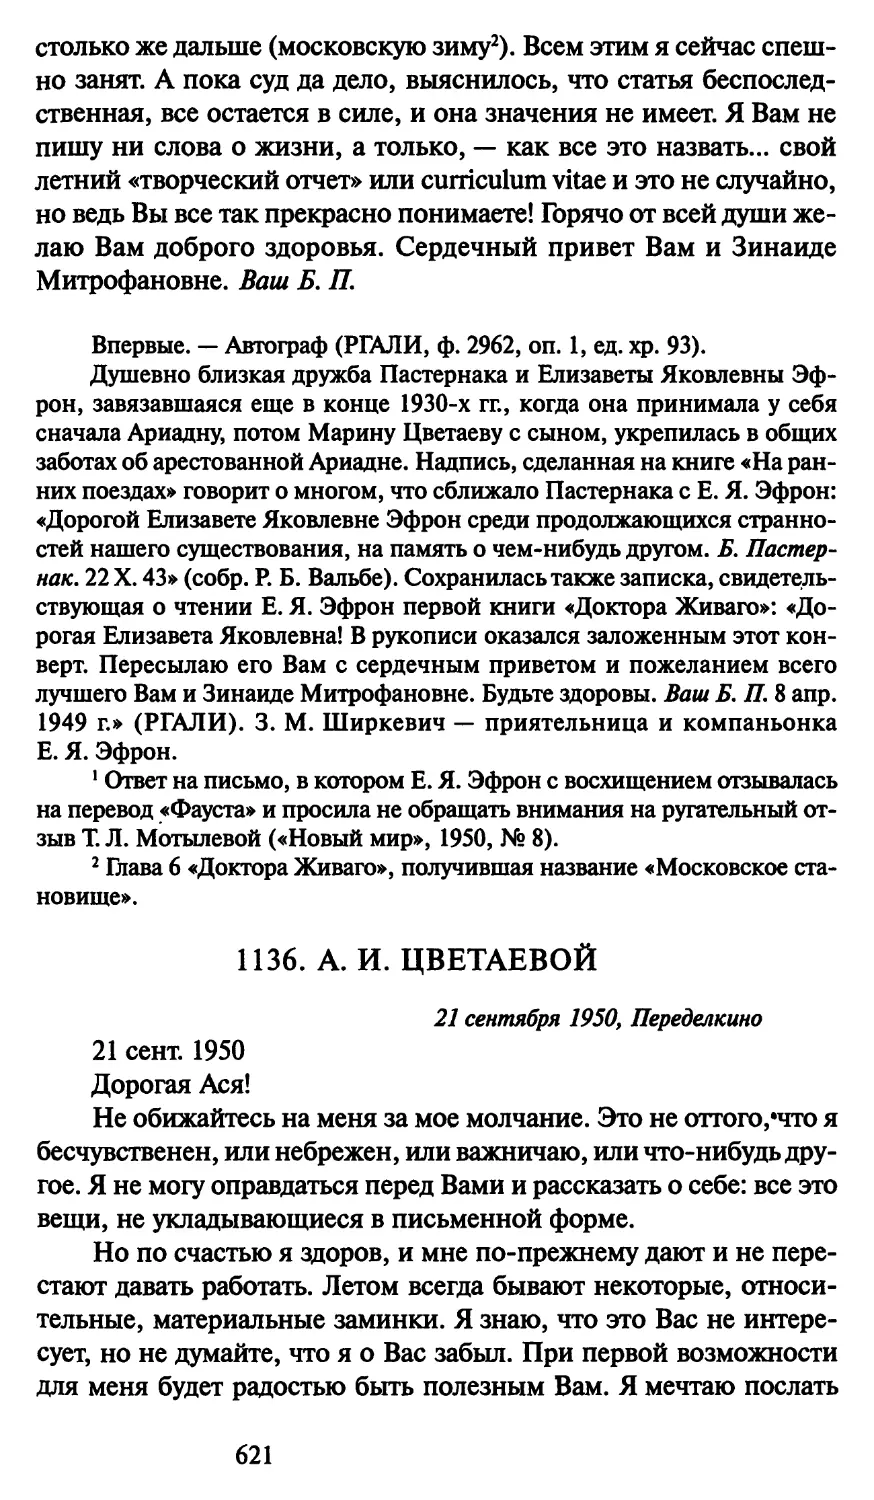 1136. А. И. Цветаевой 21 сентября 1950